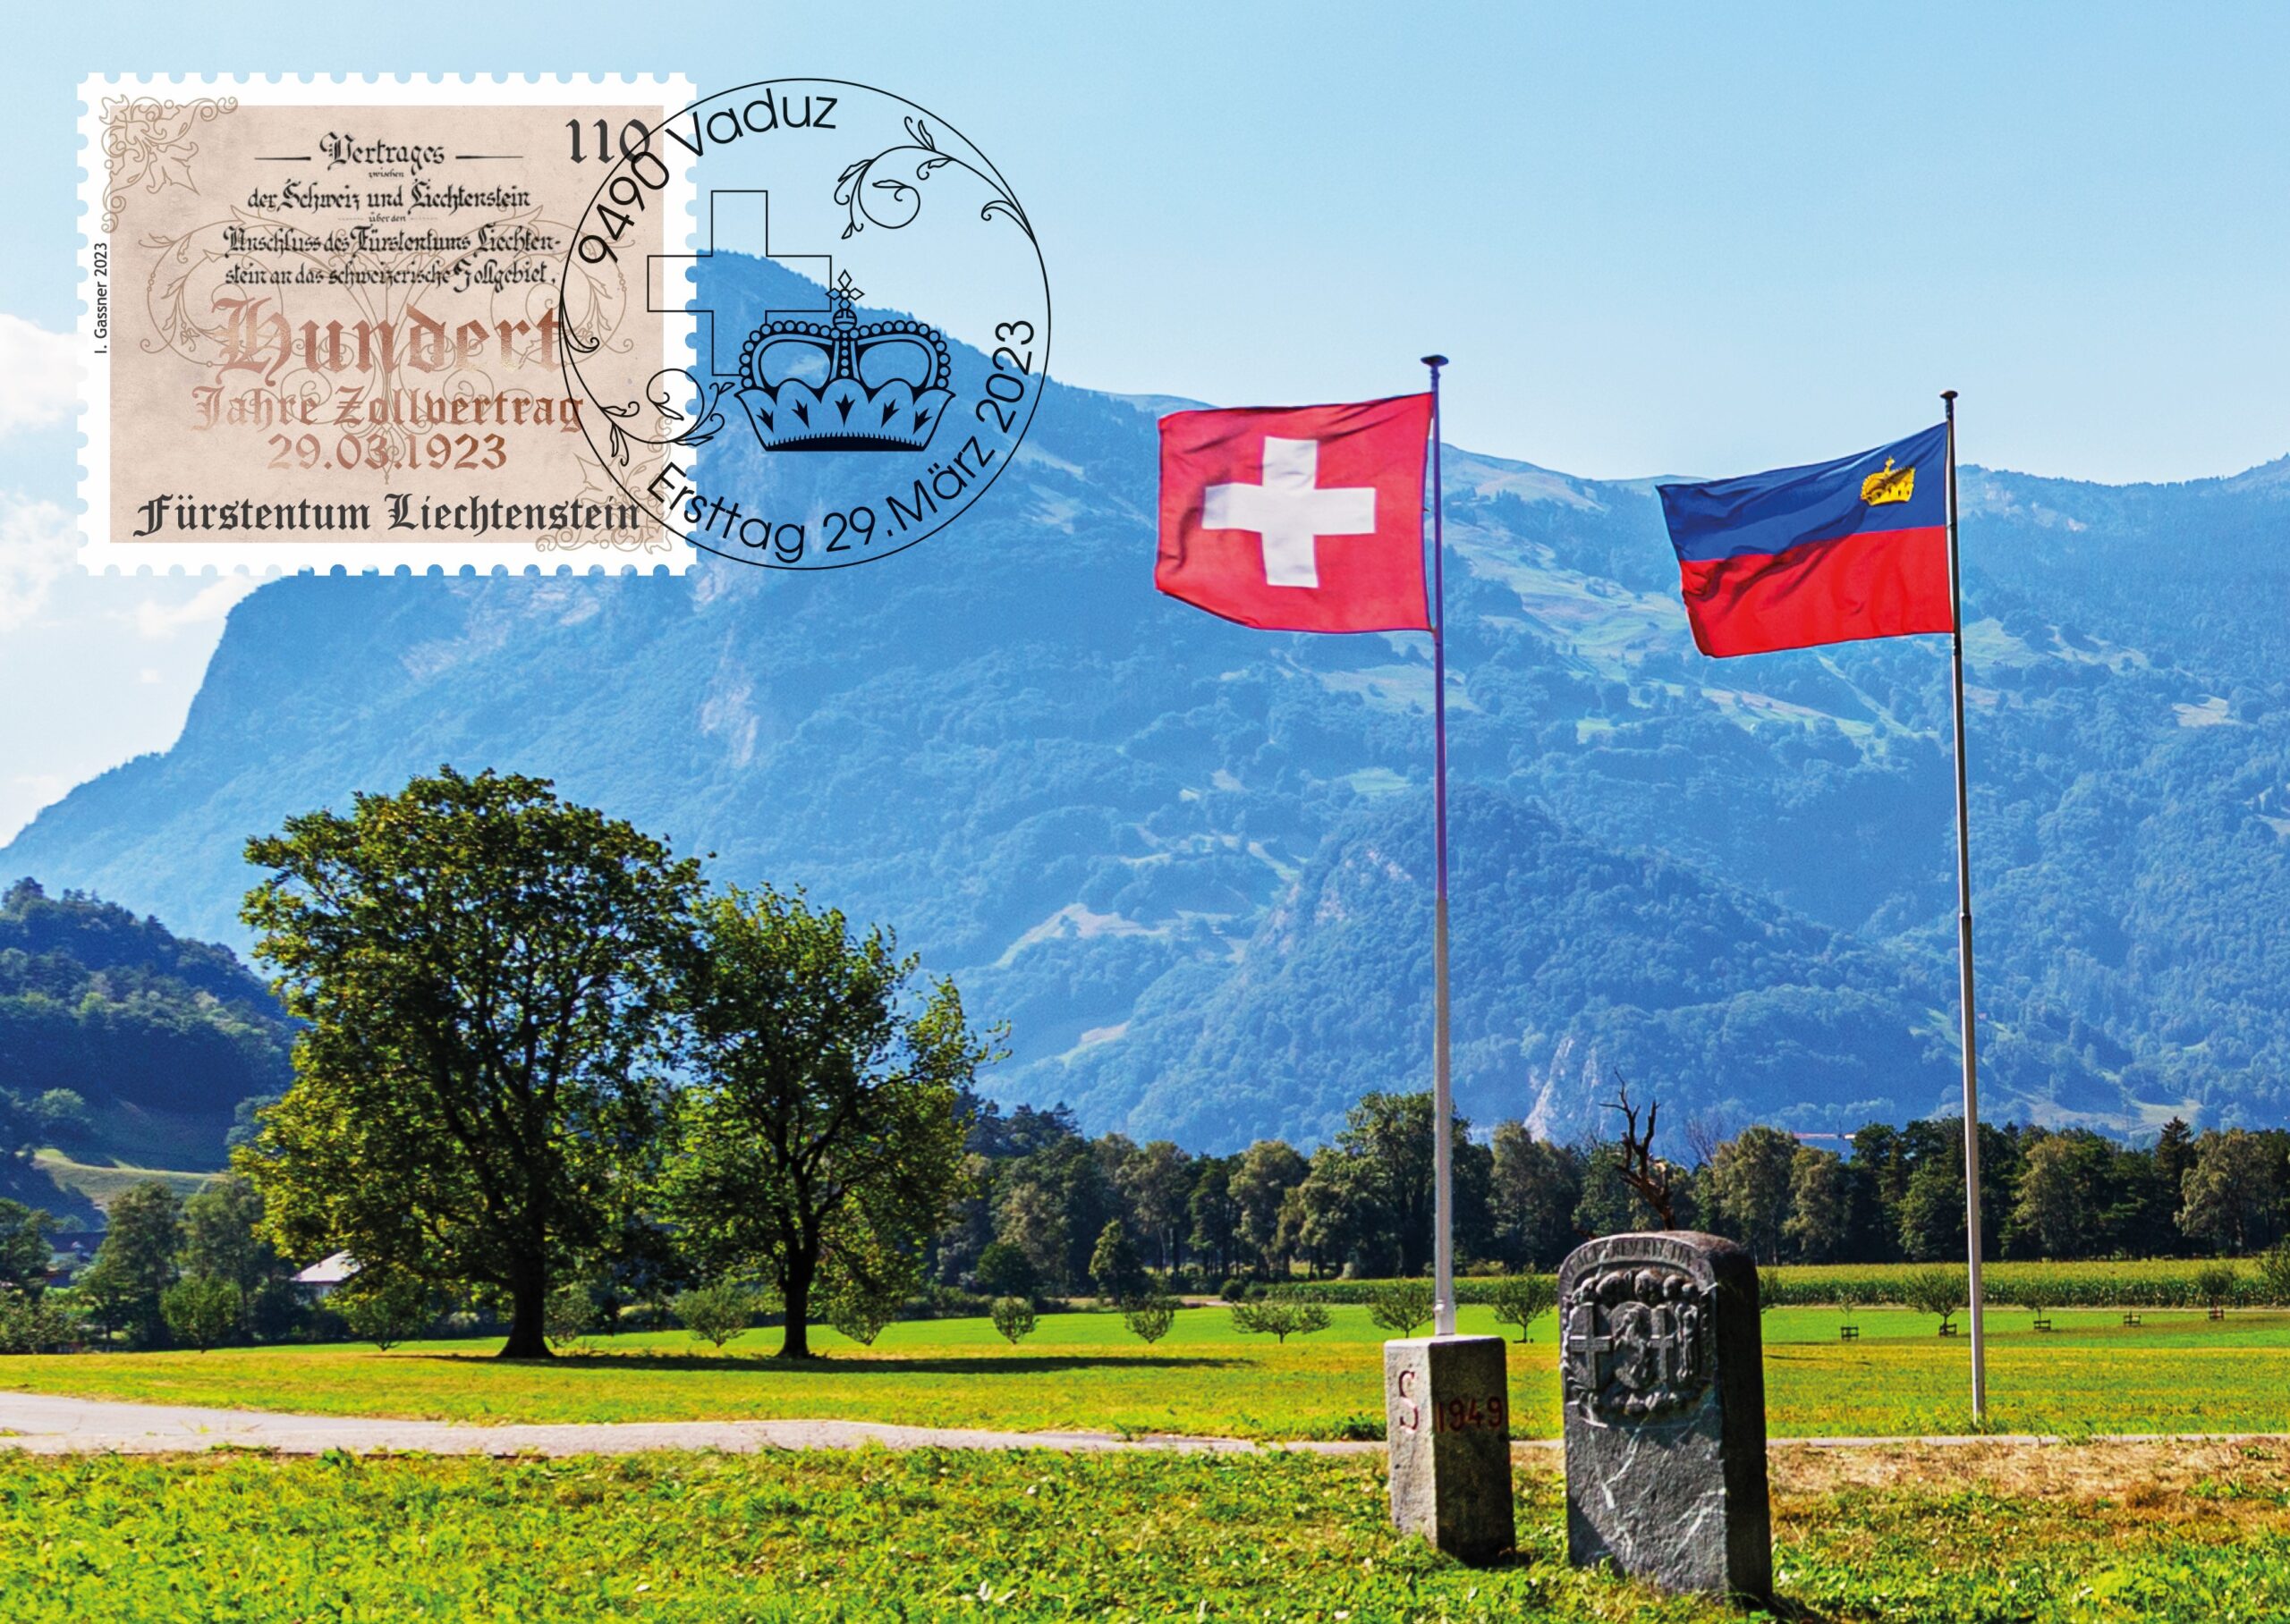 Swissint - Qualität aus dem Fürstentum Liechtenstein